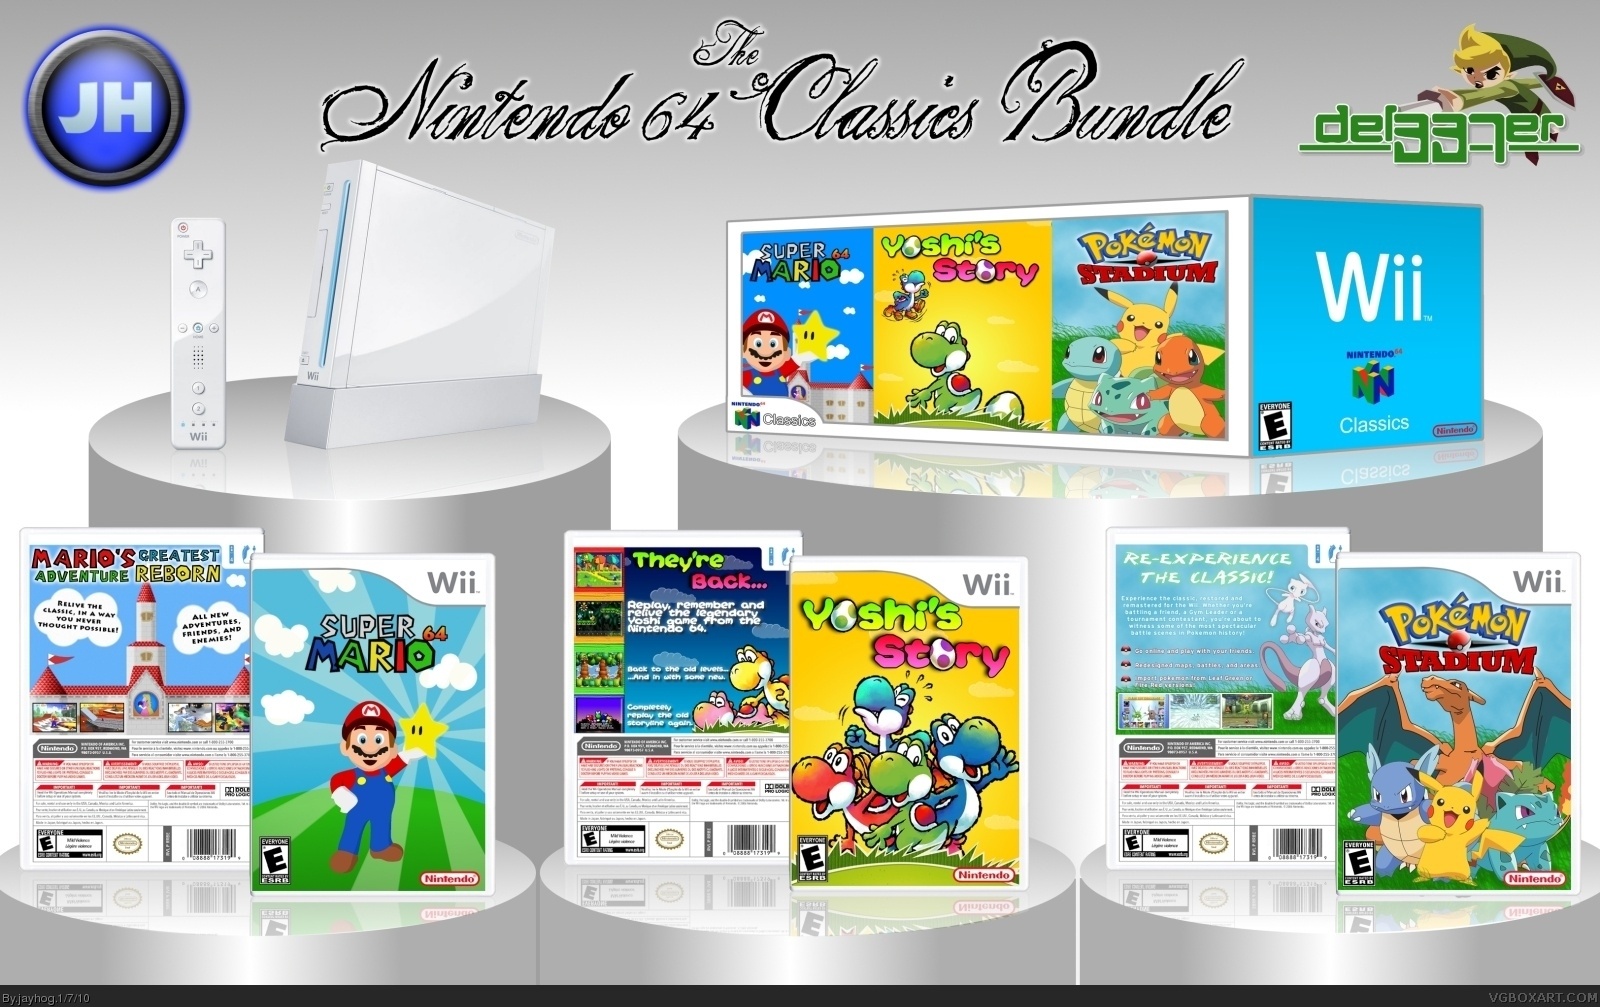 N64 Classics box cover